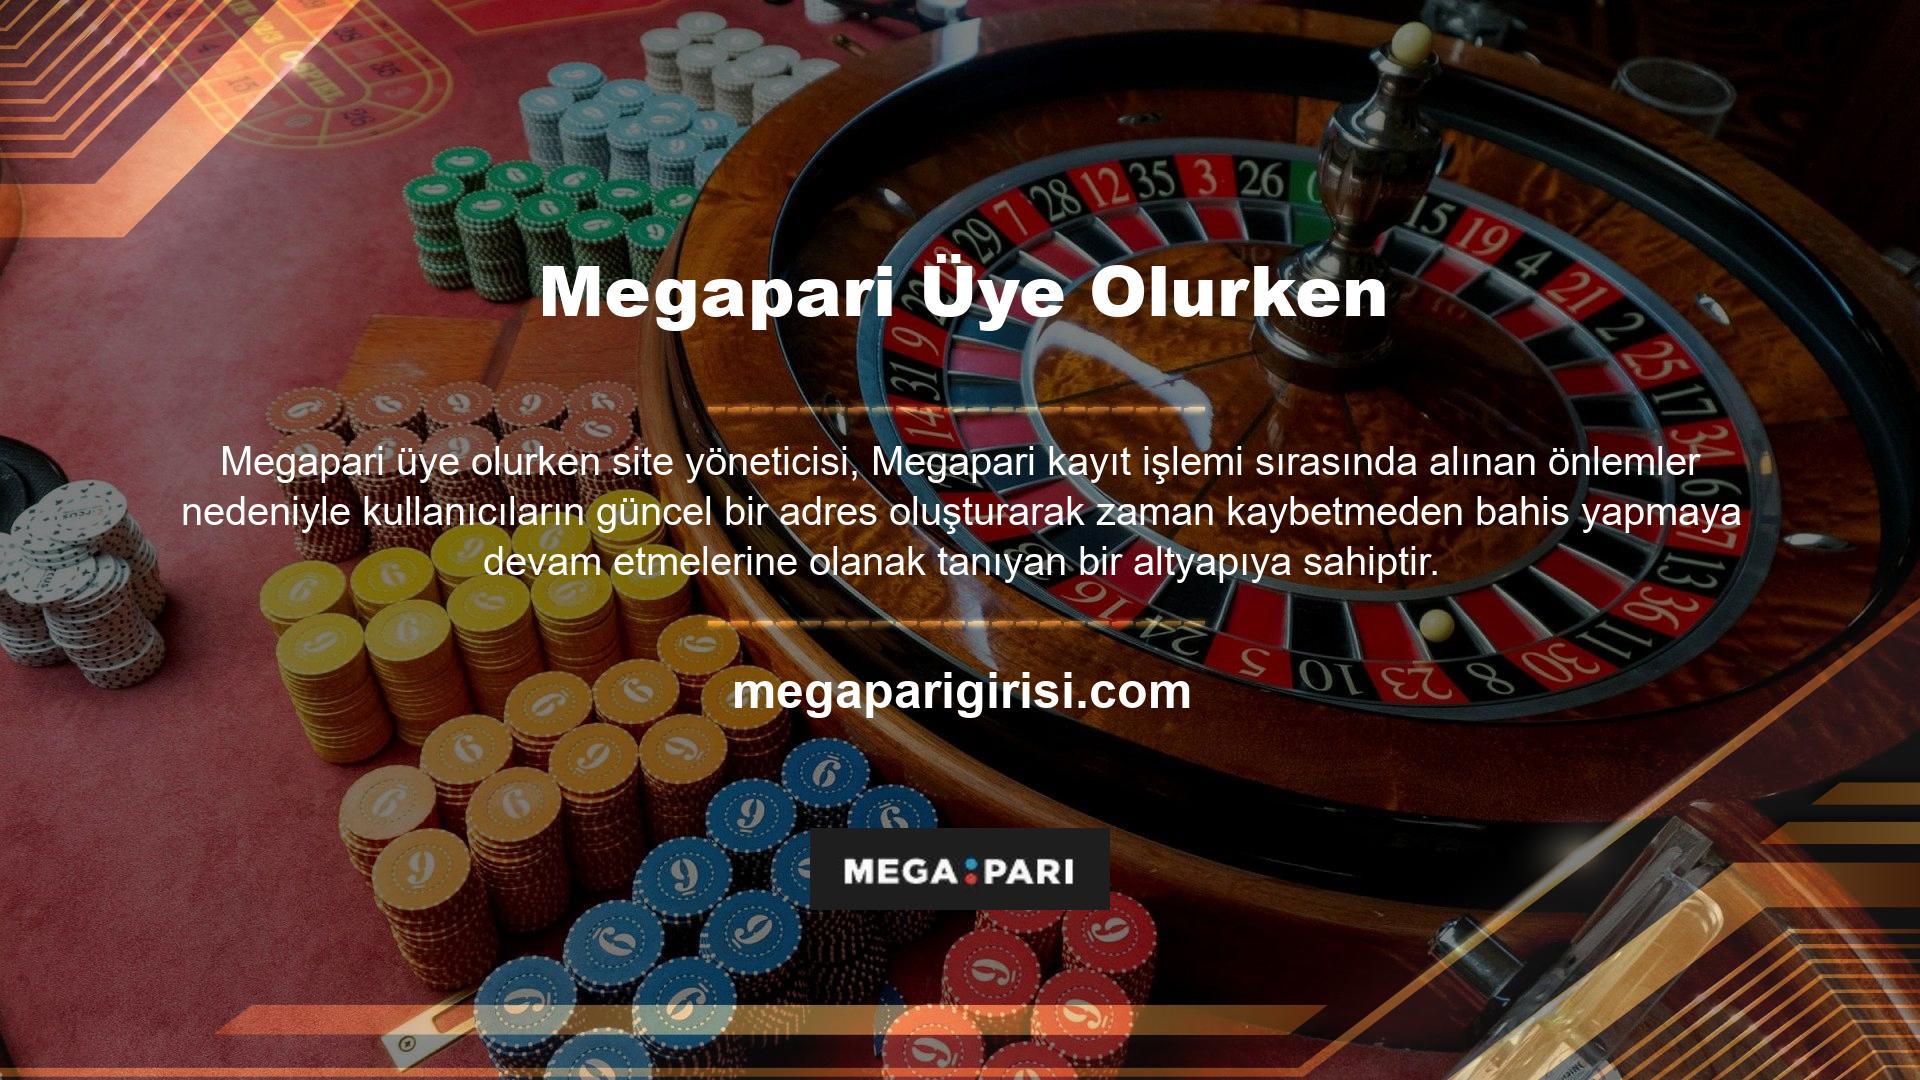 Megapari güvenli ve hızlı işlem altyapısı, Megapari üye olurken kullanıcıların en çok ilgi duyduğu özelliklerden biridir